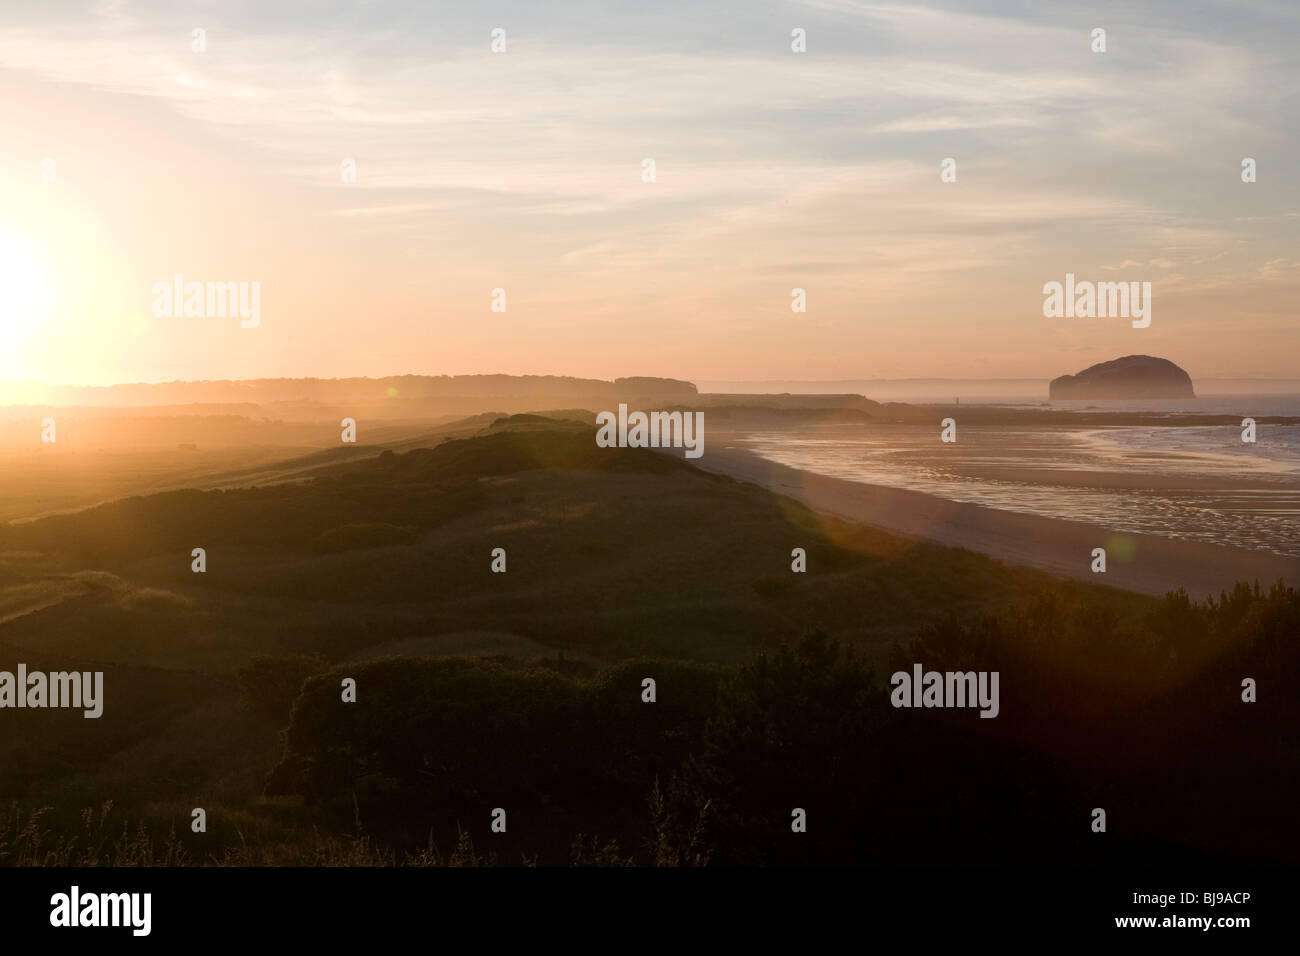 scottish coastline at sunrise with flare Stock Photo